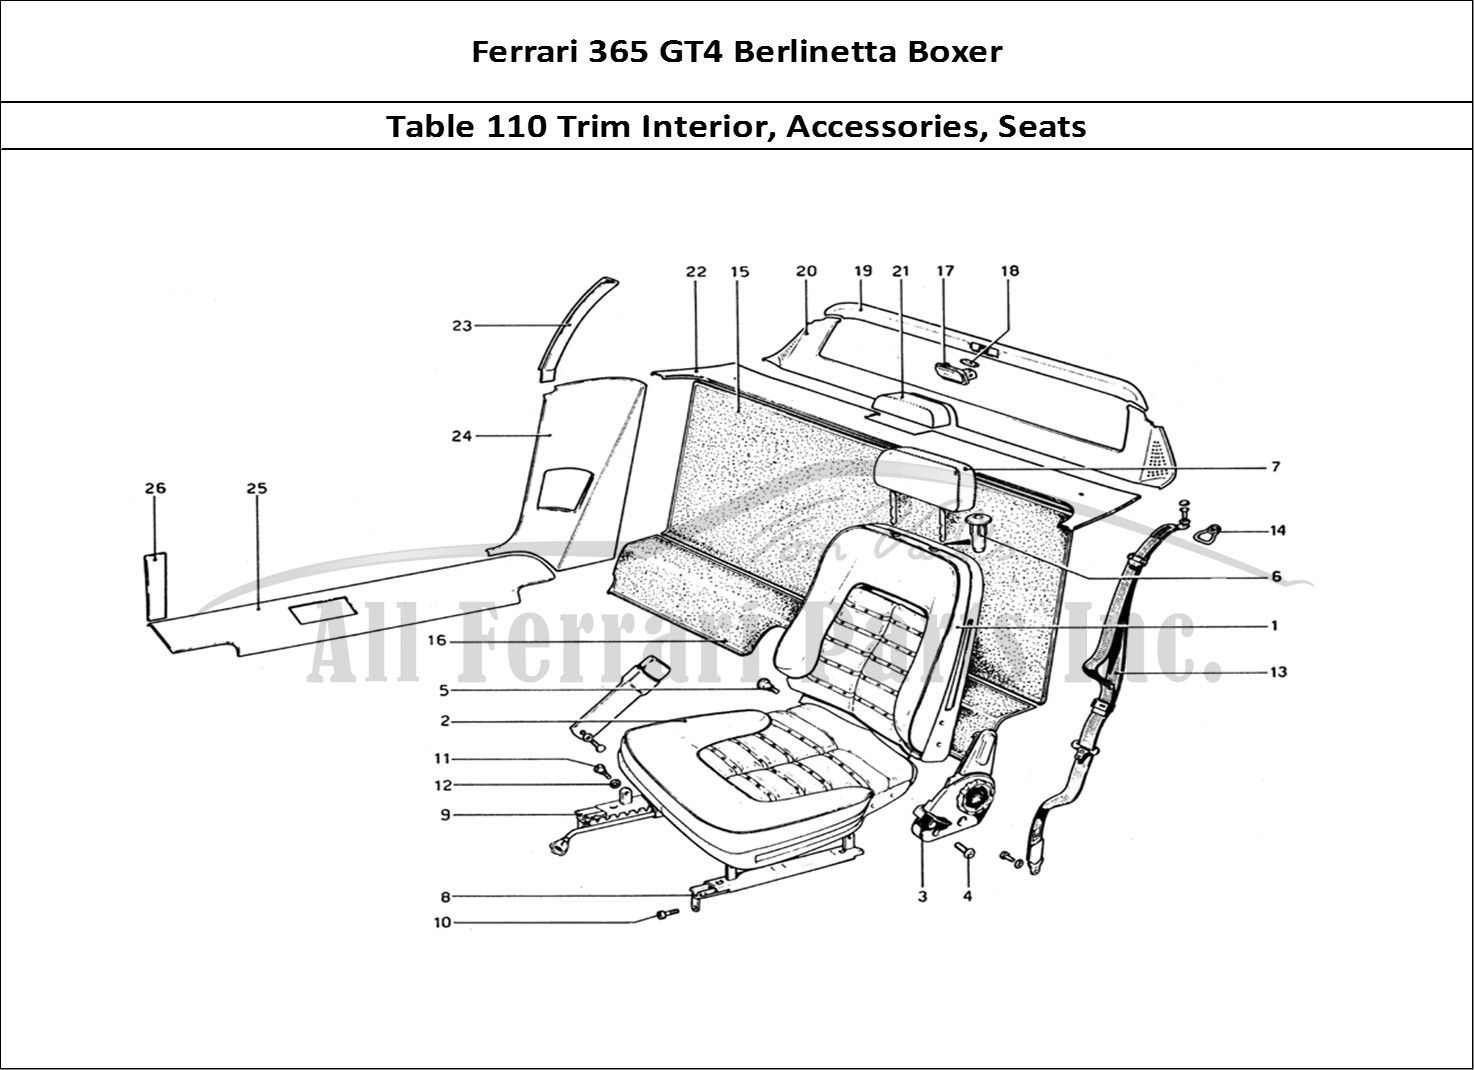 Ferrari Parts Ferrari 365 GT4 Berlinetta Boxer Page 110 Interior Trim, Accessorie